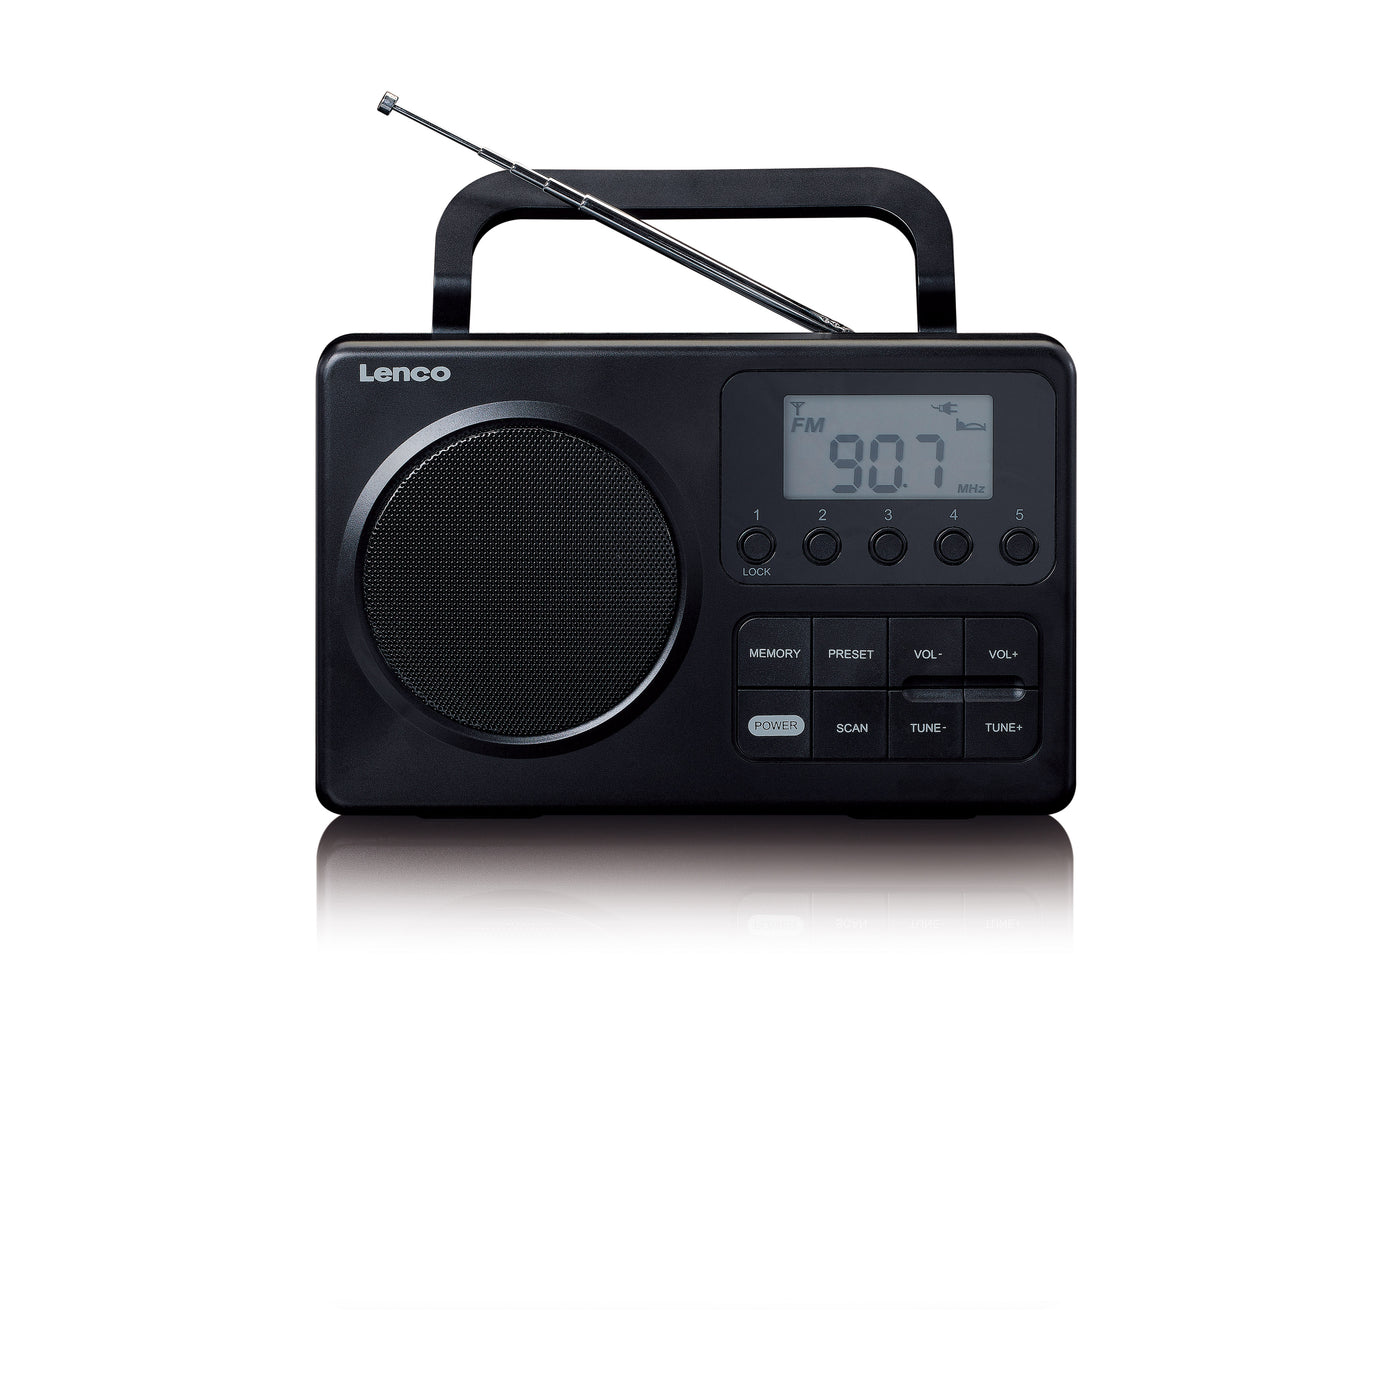 Lenco MPR-035BK - Radio FM portable compacte avec écran LCD - Noir